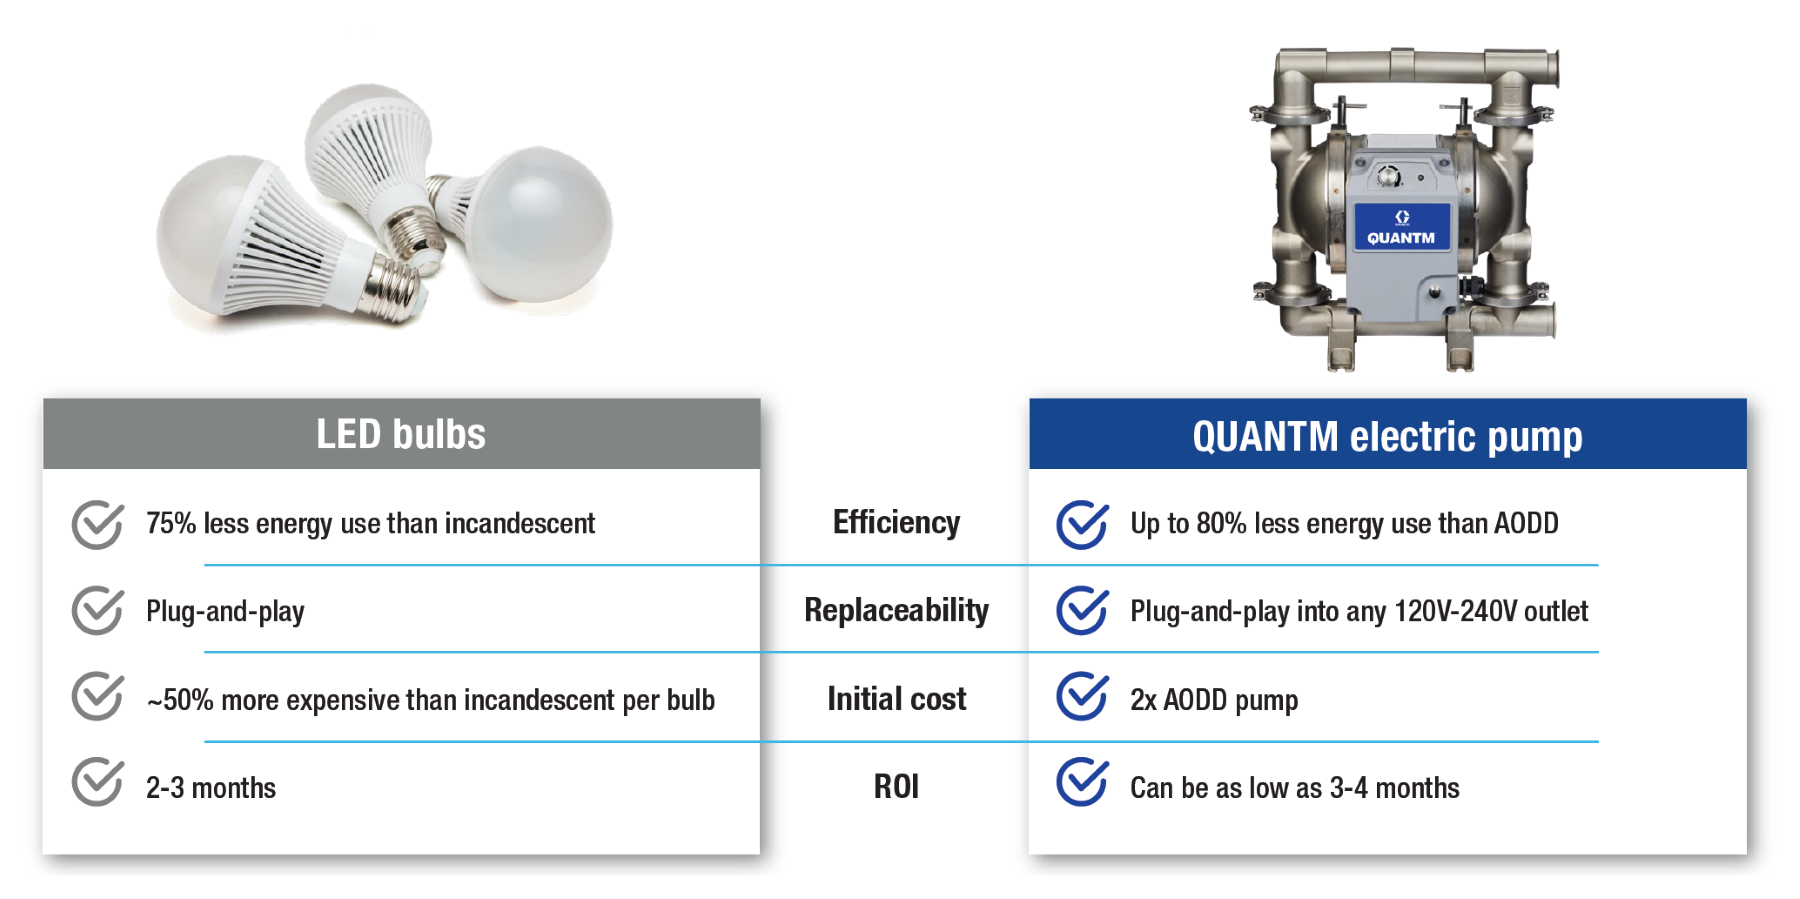 Photo qui représente des ampoules LED et une pompe électrique QUANTM de Graco comparant les bénéfices de l’un et de l’autre pour réduire sa consommation d’énergie dans l’industrie.